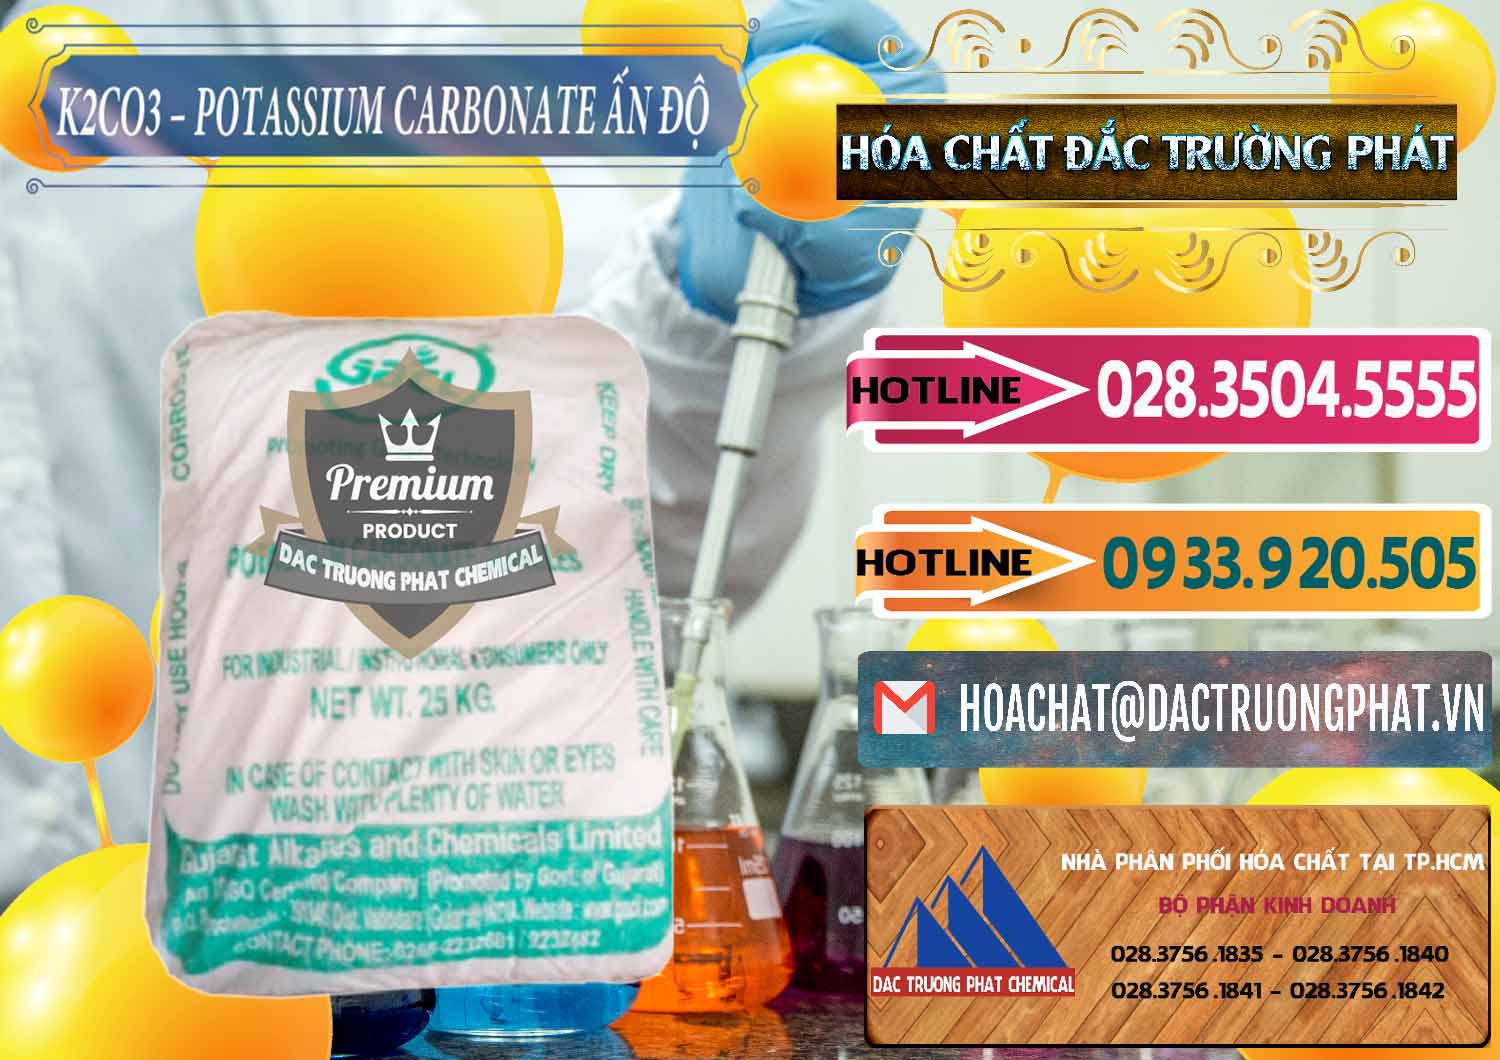 Cty chuyên bán ( cung cấp ) K2Co3 – Potassium Carbonate GACL Ấn Độ India - 0472 - Chuyên phân phối và kinh doanh hóa chất tại TP.HCM - dactruongphat.vn